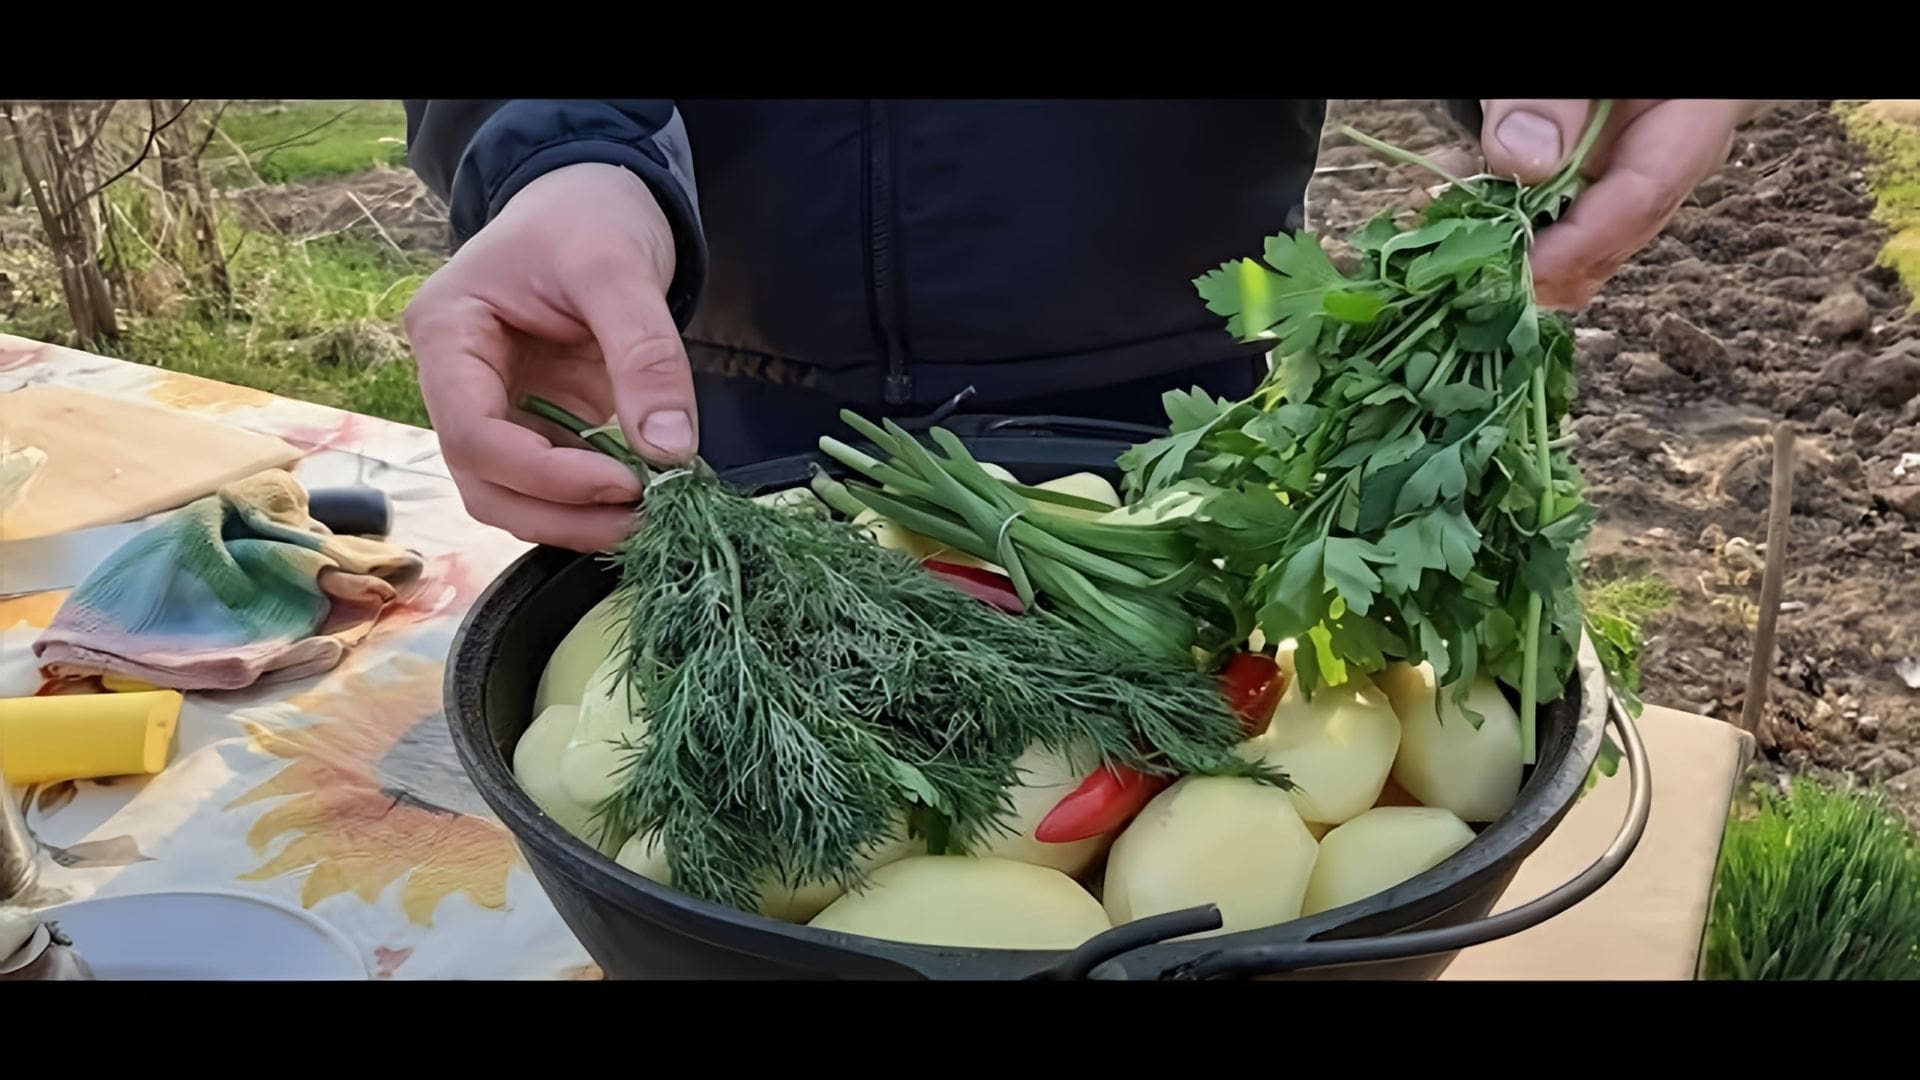 В этом видео демонстрируется процесс приготовления блюда узбекской кухни под названием "Басма из свинины"